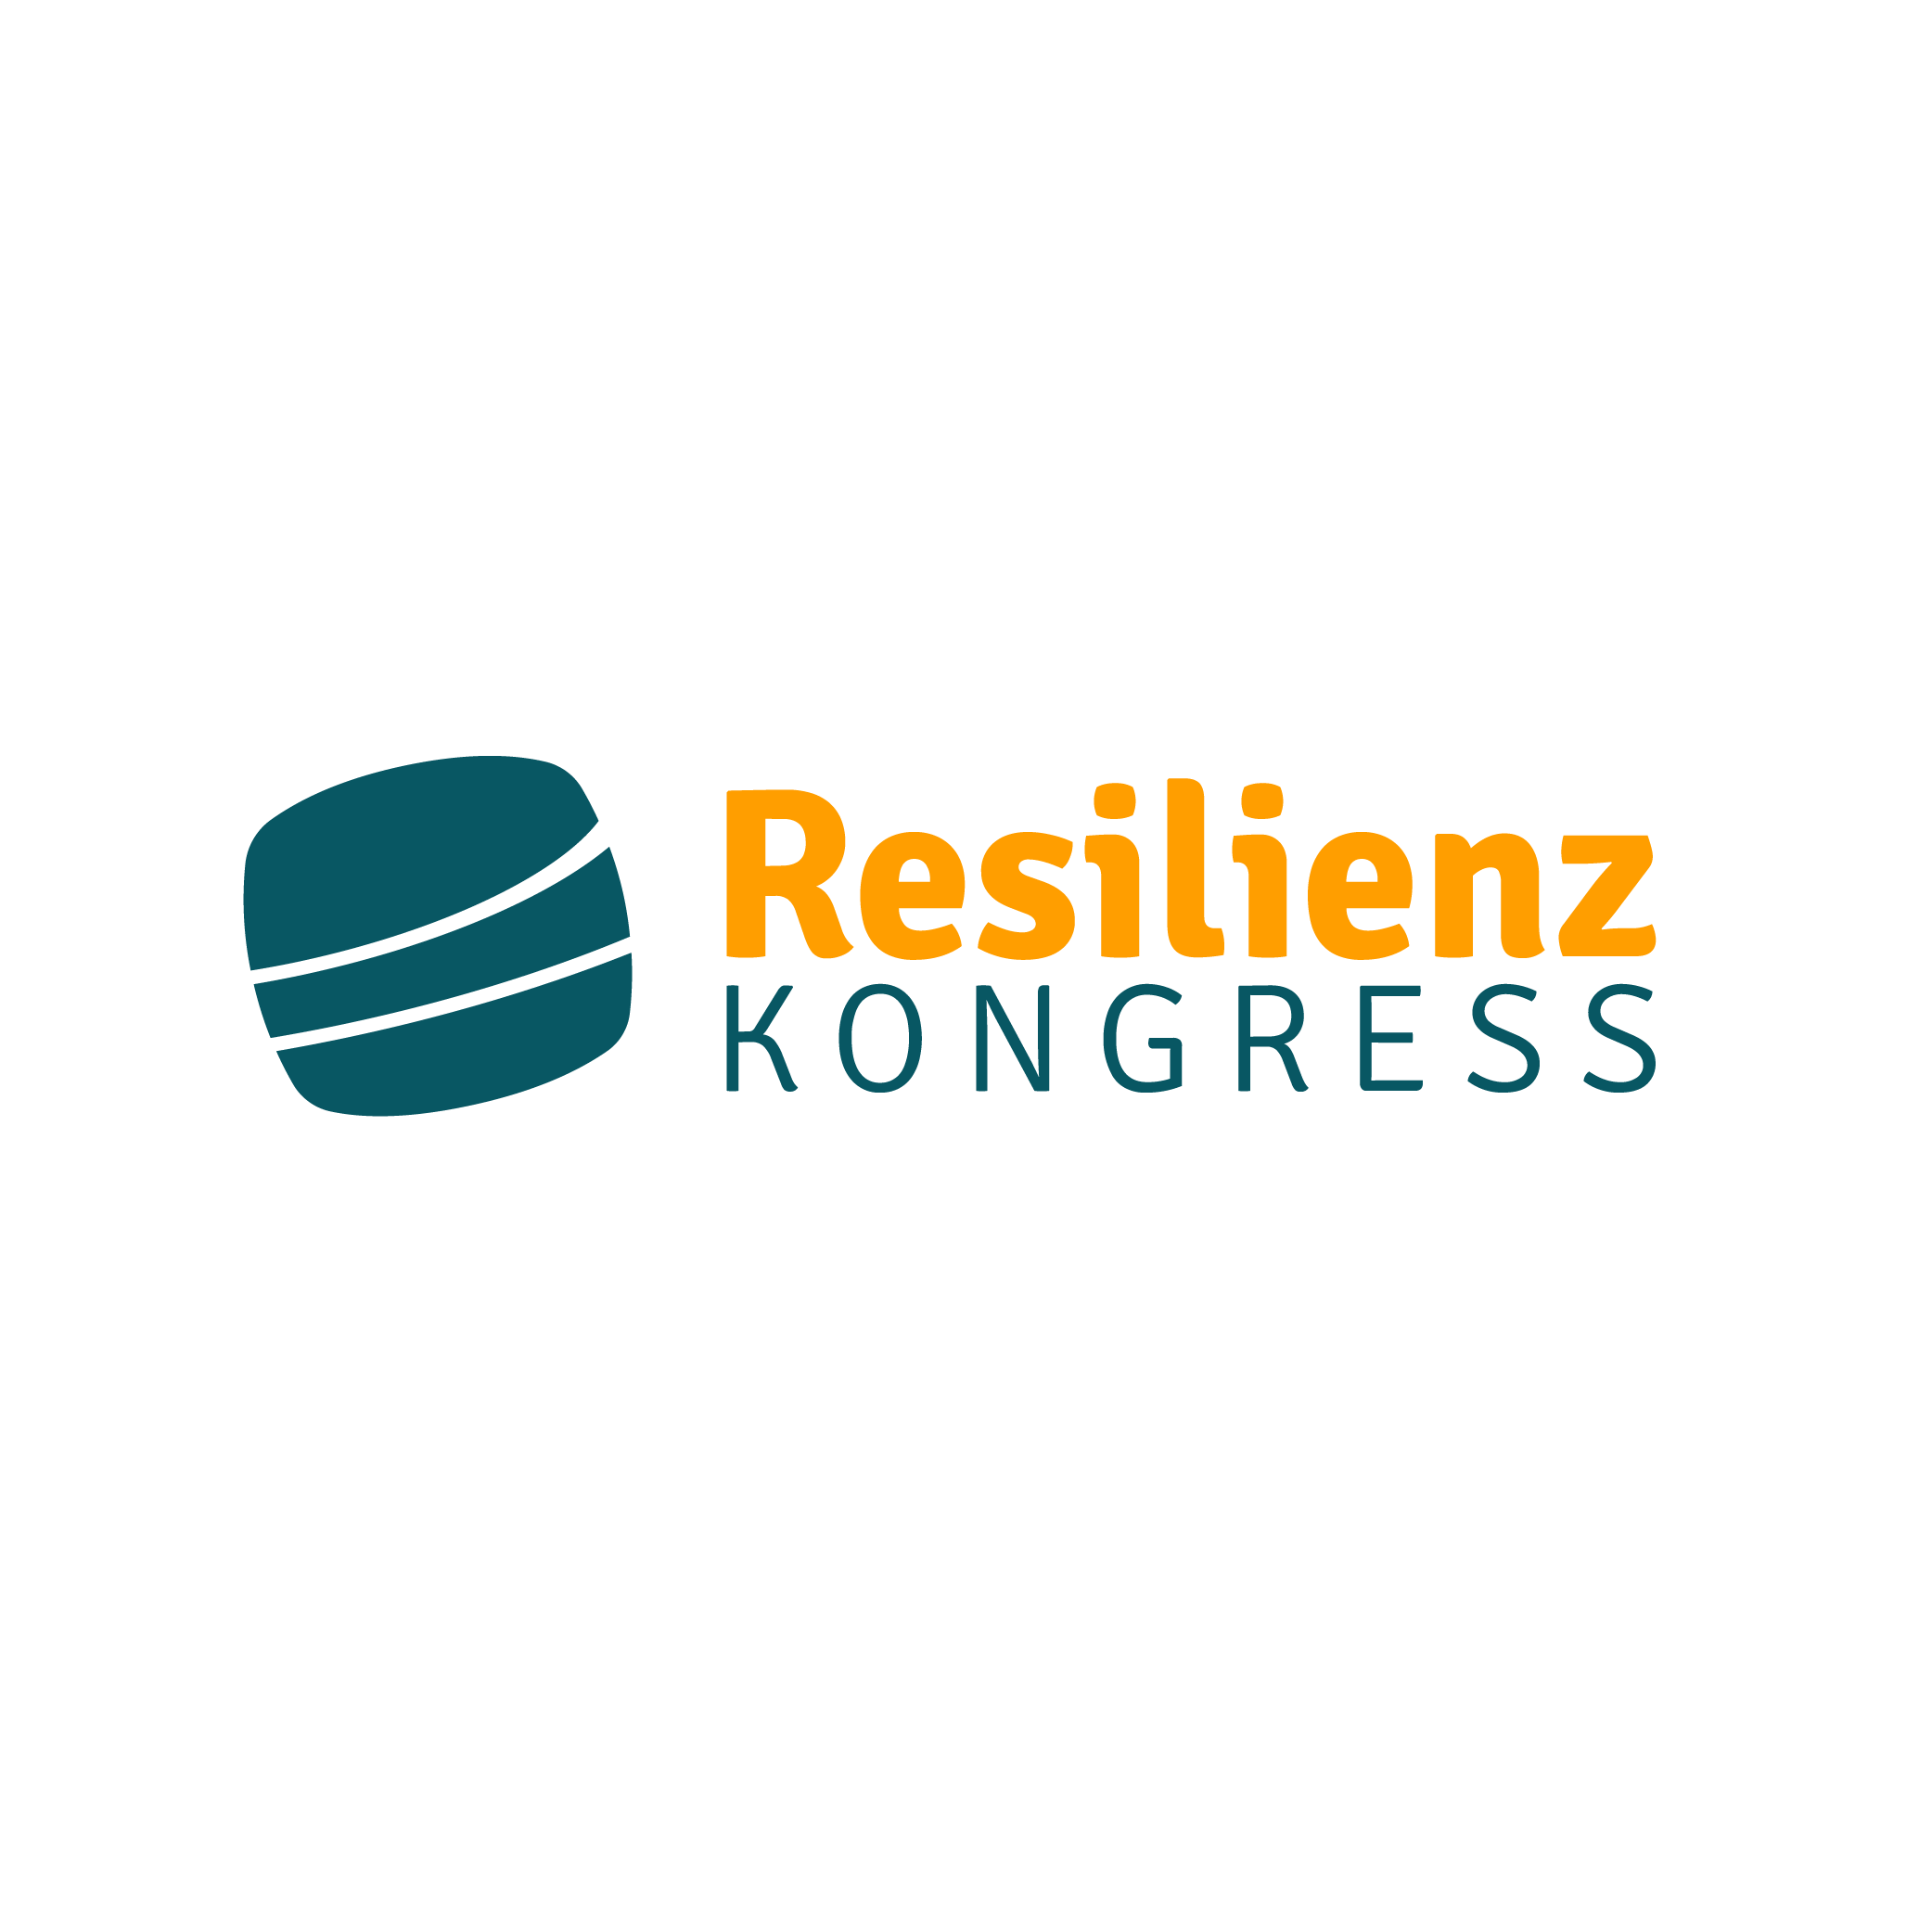 Lumen_referenz_resilienz_kongress.png